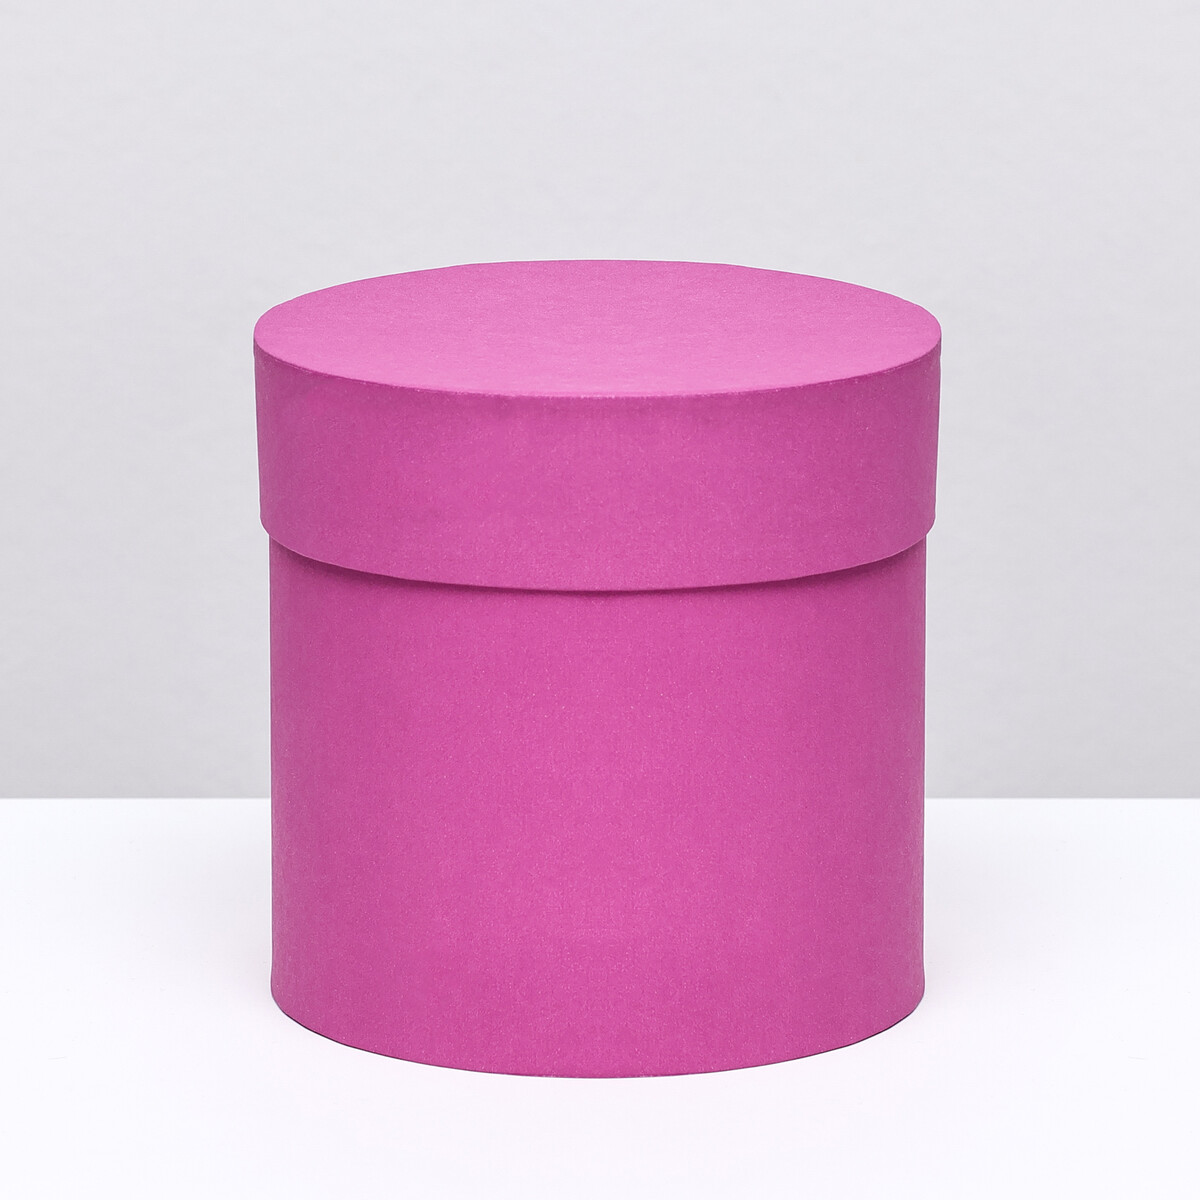 Шляпная коробка фуксия, 13 х 13 см шляпная коробка розовая 18 х 18 см